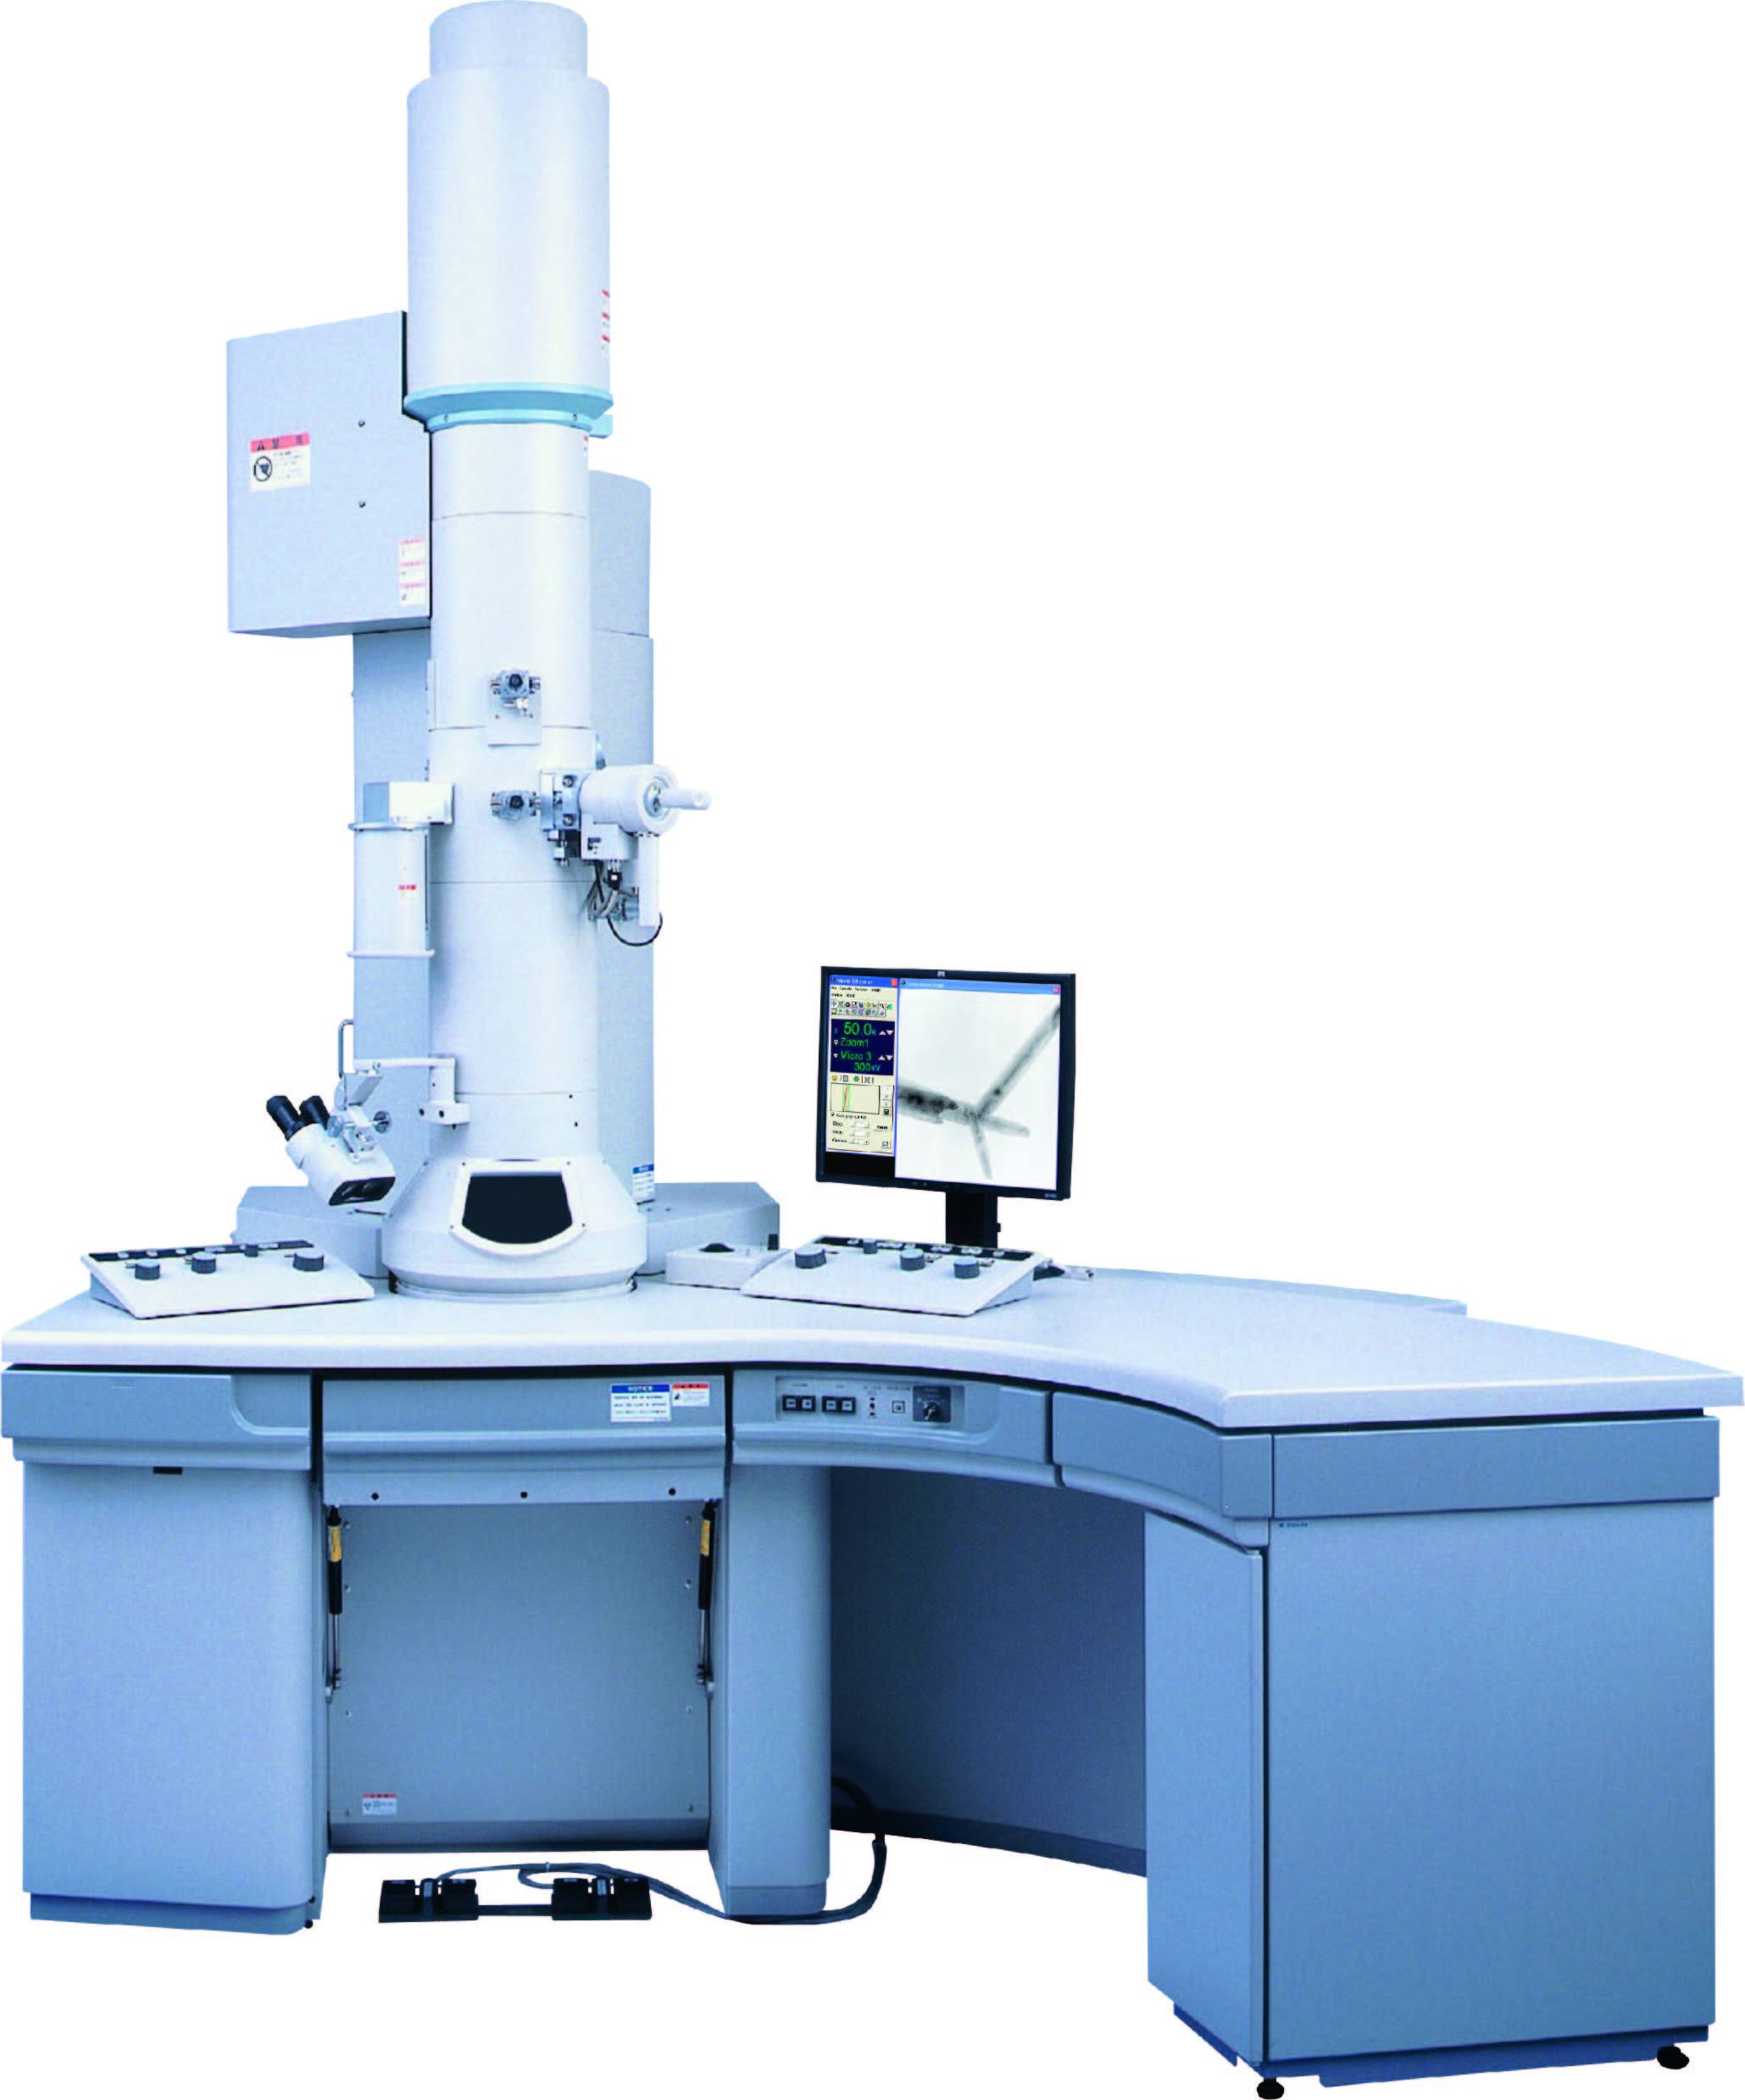 日立高分辨环境透射电镜H-9500